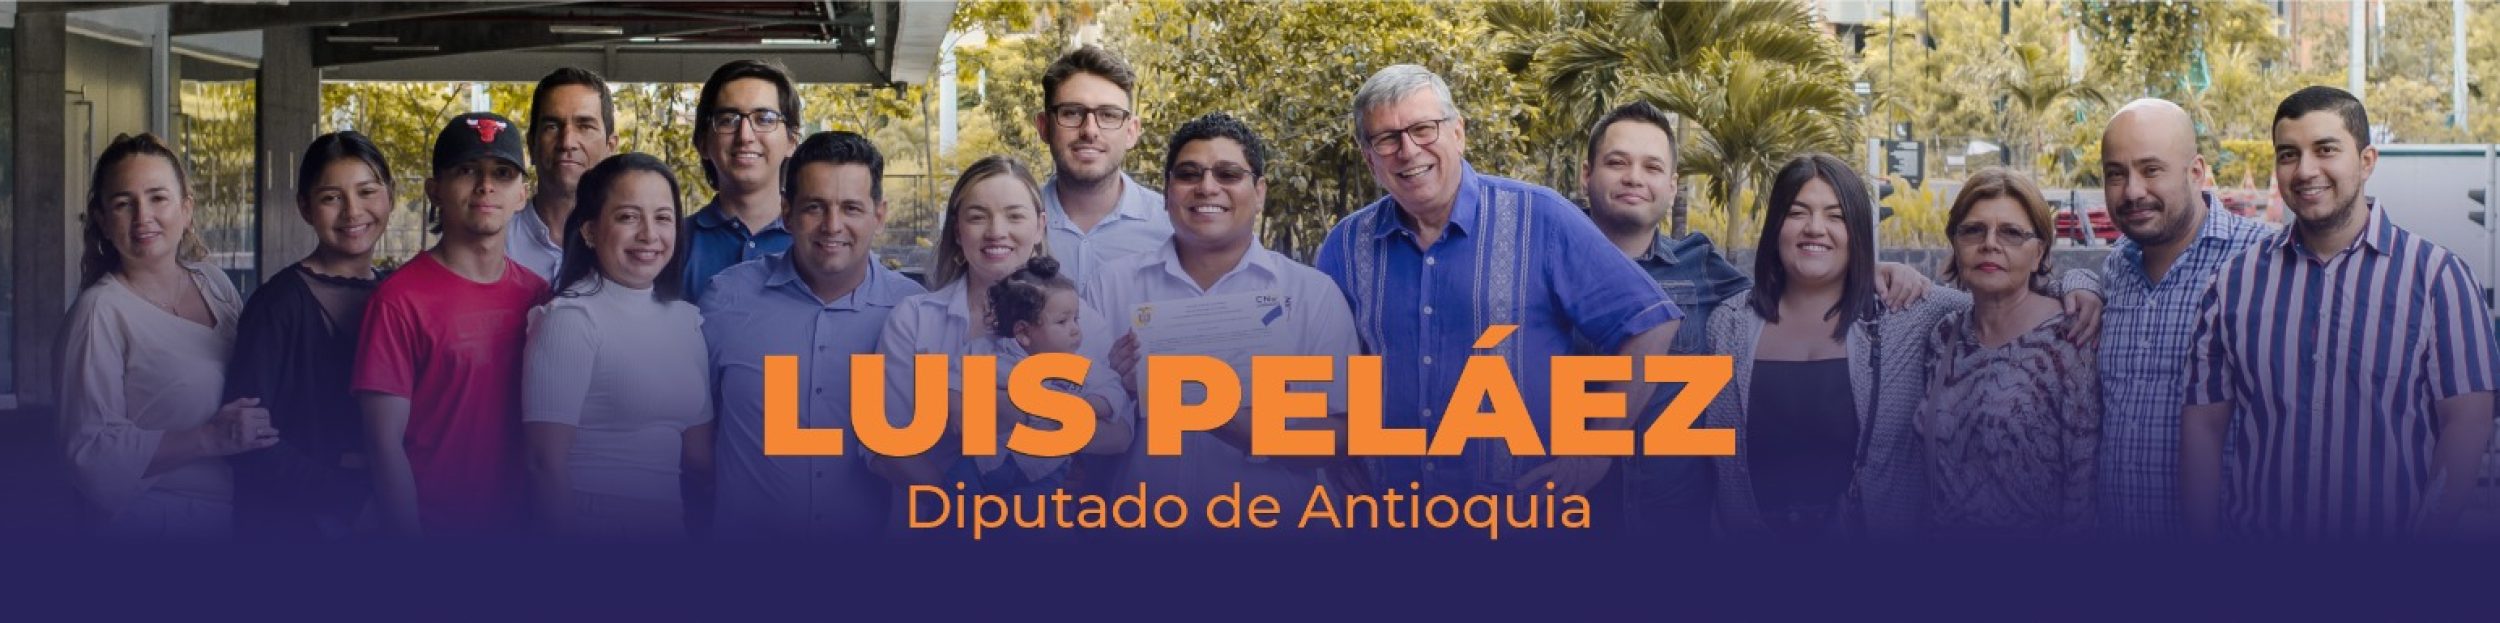 Luis Pelaez – Diputado de Antioquia